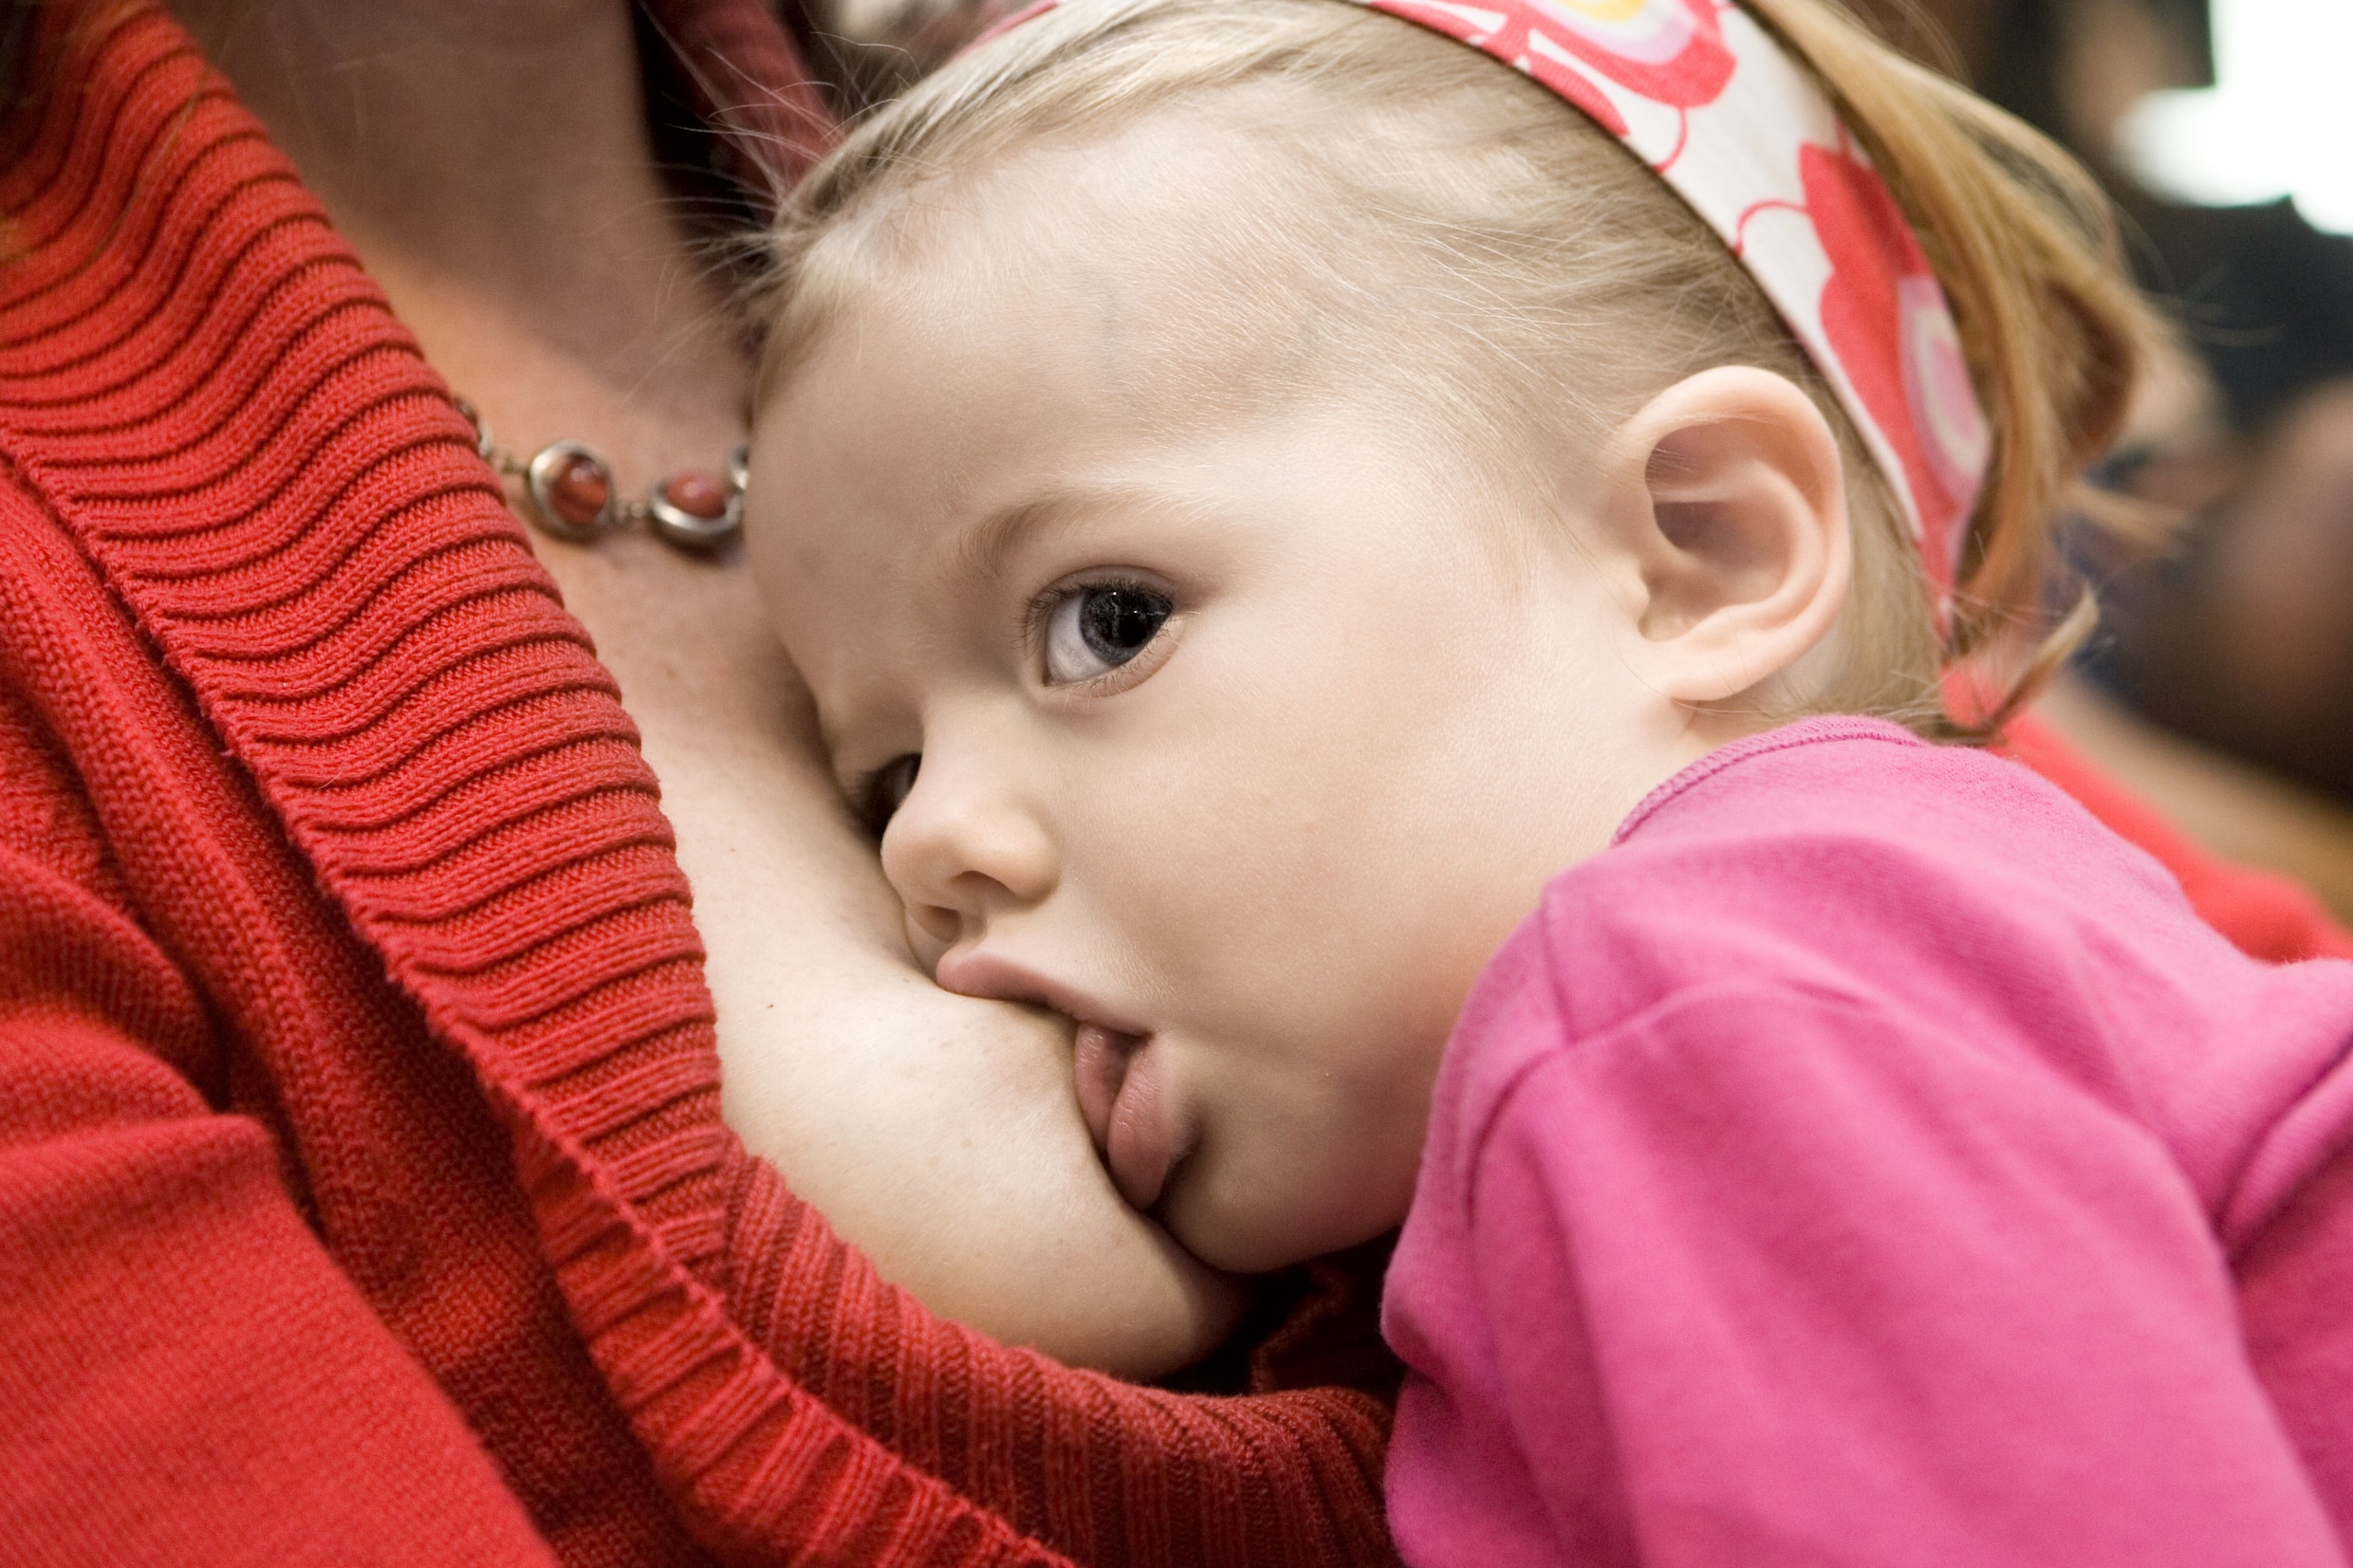 Amper de helft van de Nederlandse baby’s krijgt borstvoeding